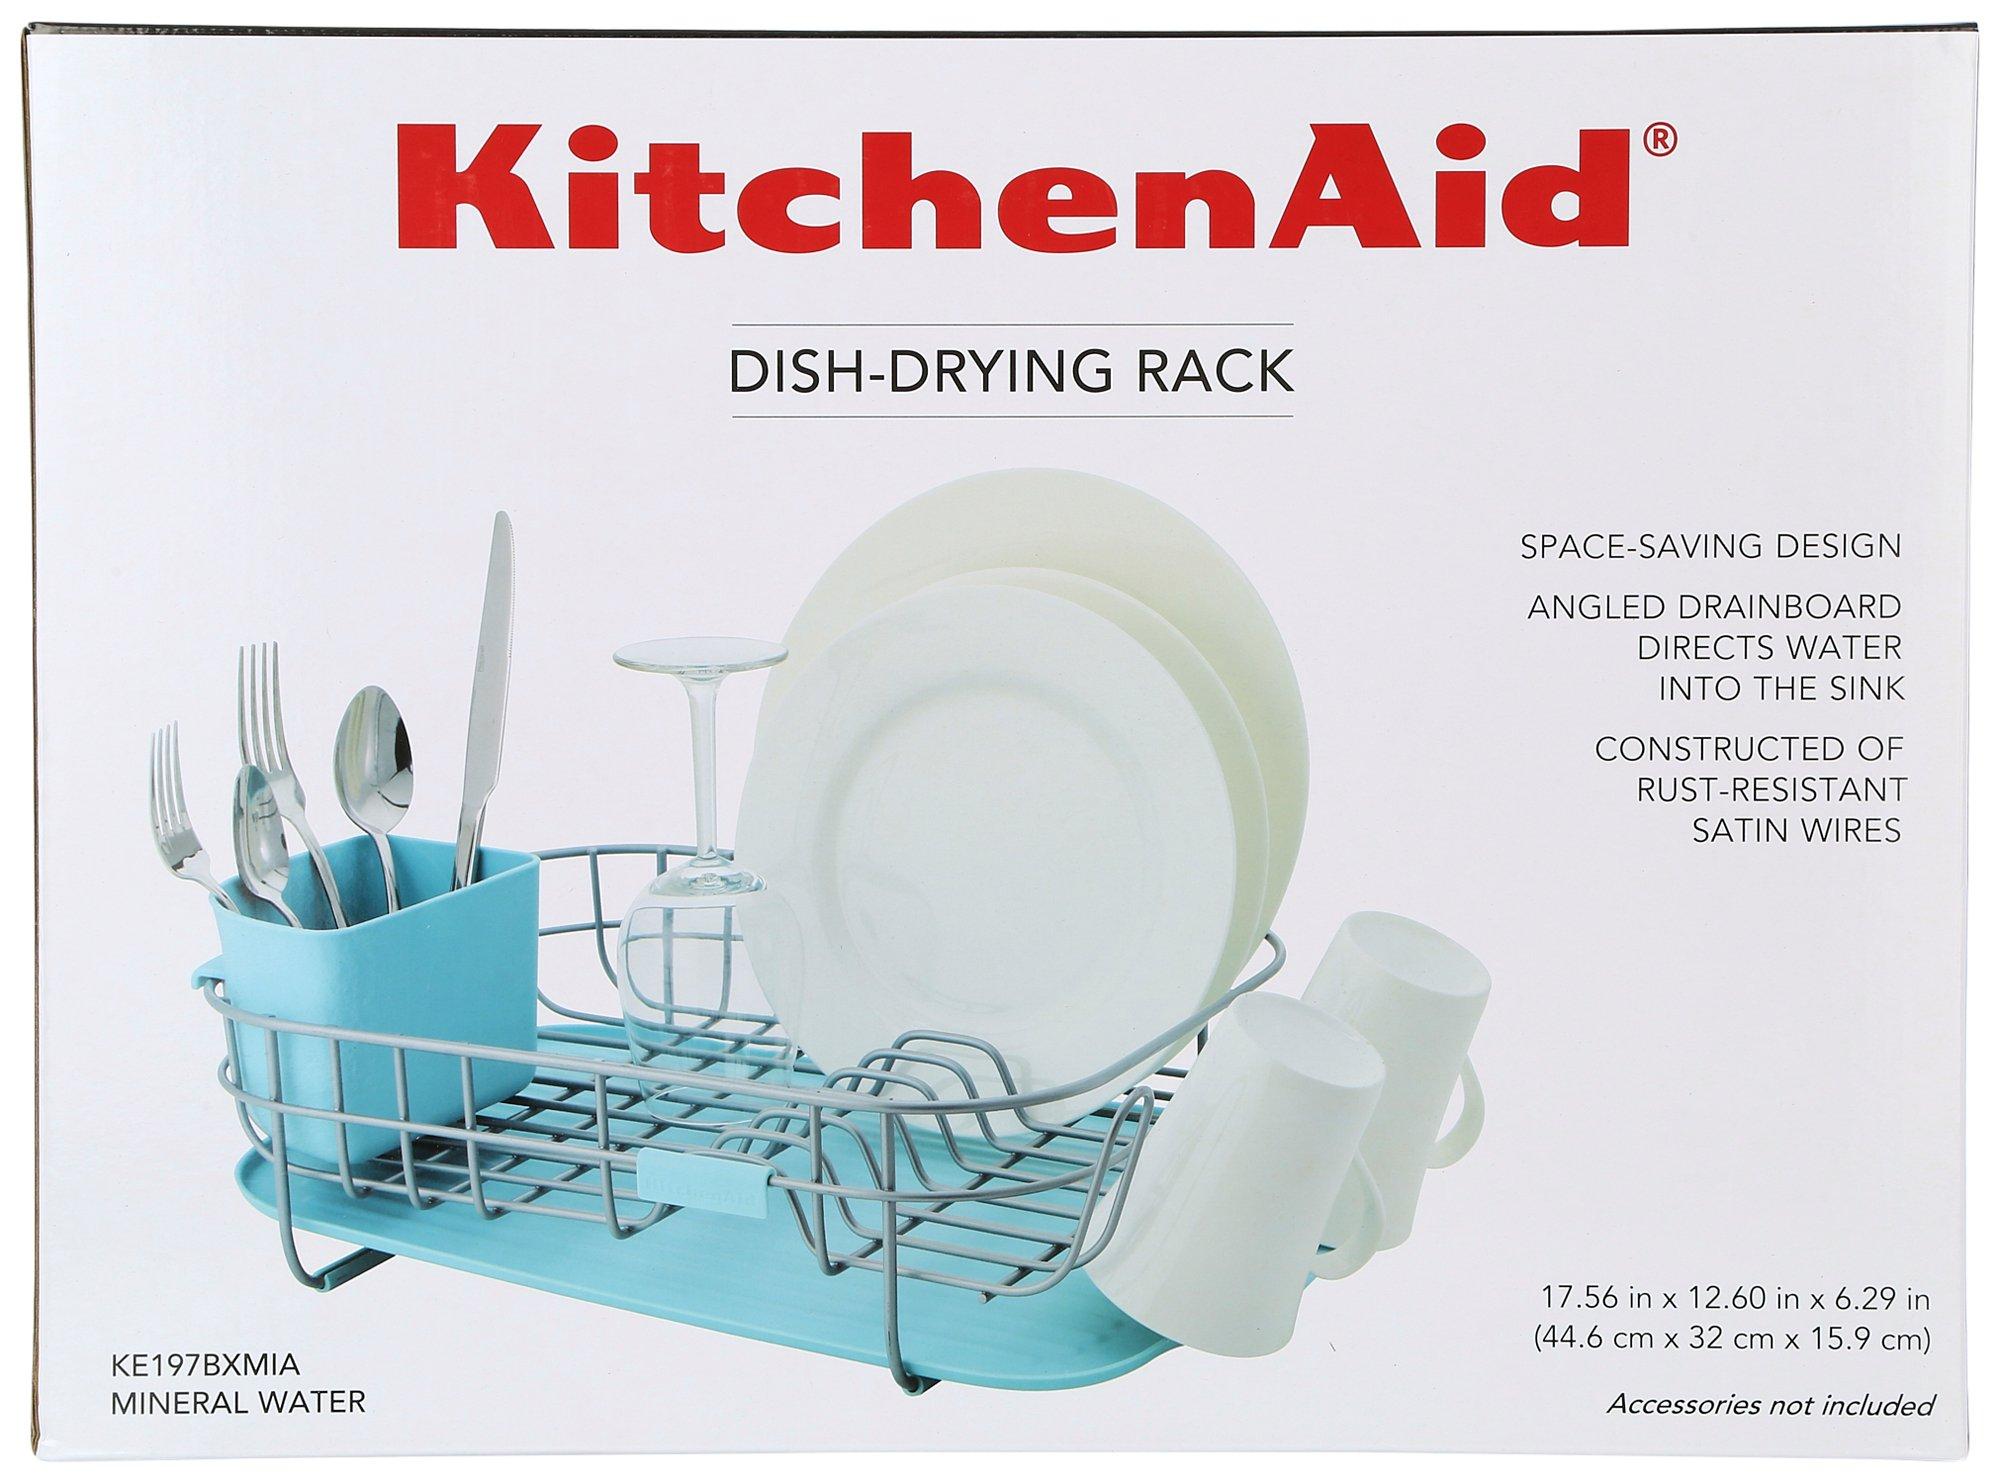 Kitchenaid Dish-Drying Rack